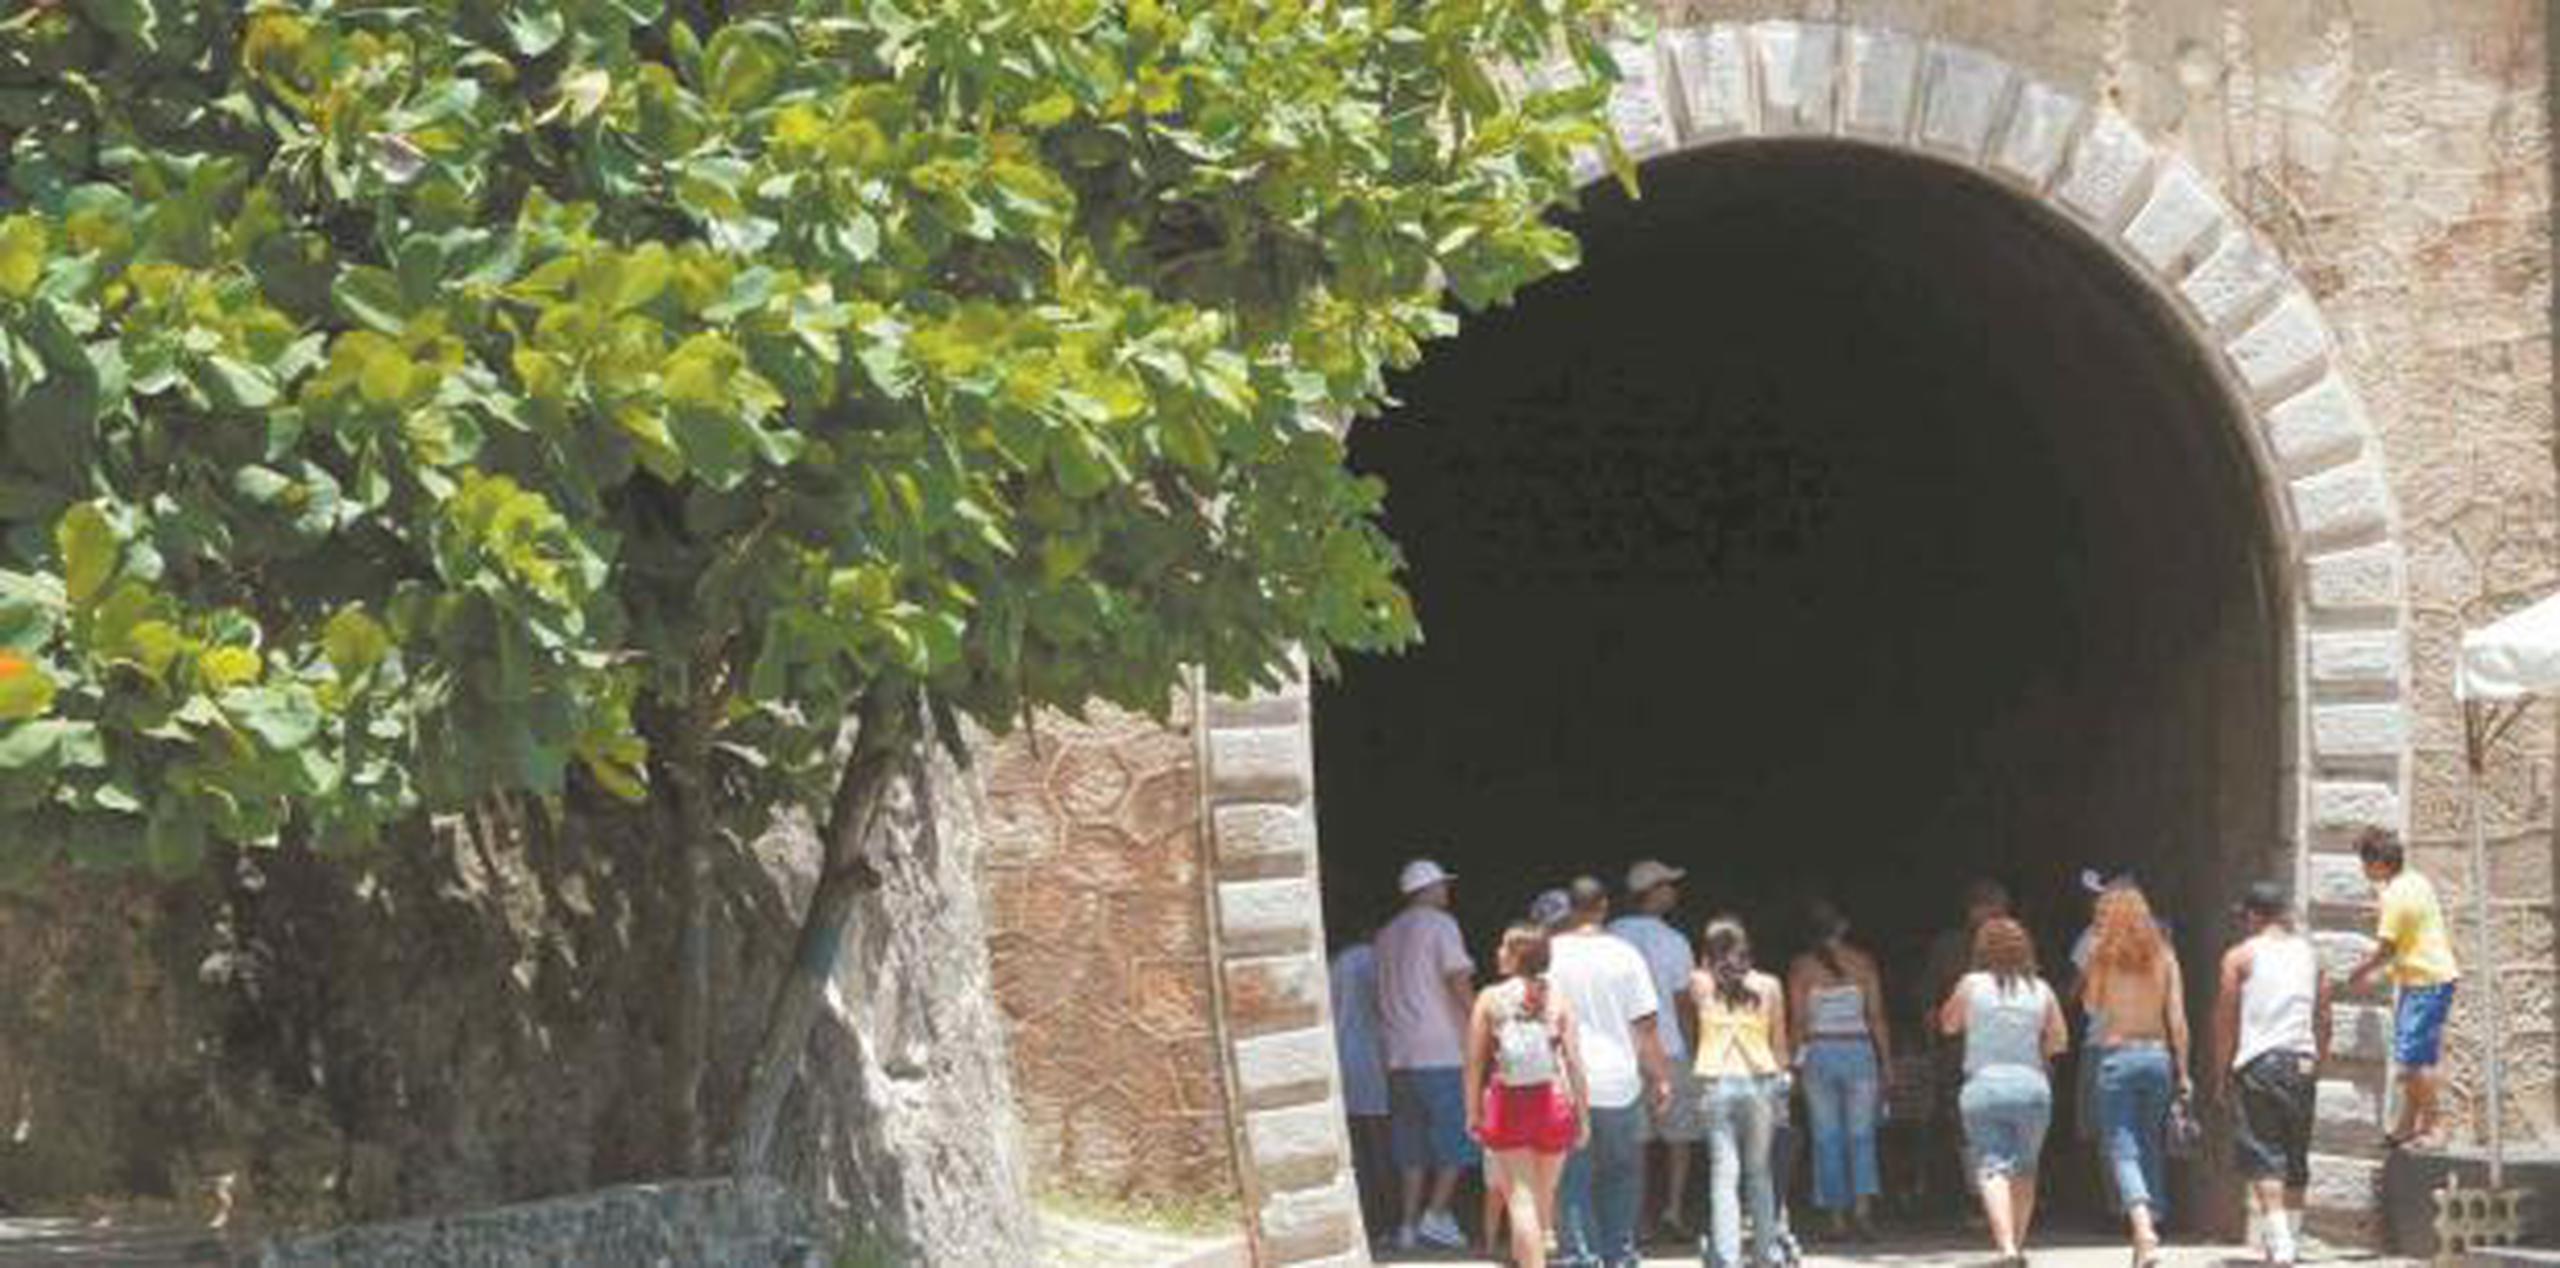 El vehículo, indicó la Policía, fue recuperado en el área del Túnel de Guajataca, ubicado en el barrio Cotto de Isabela. (archivo)


